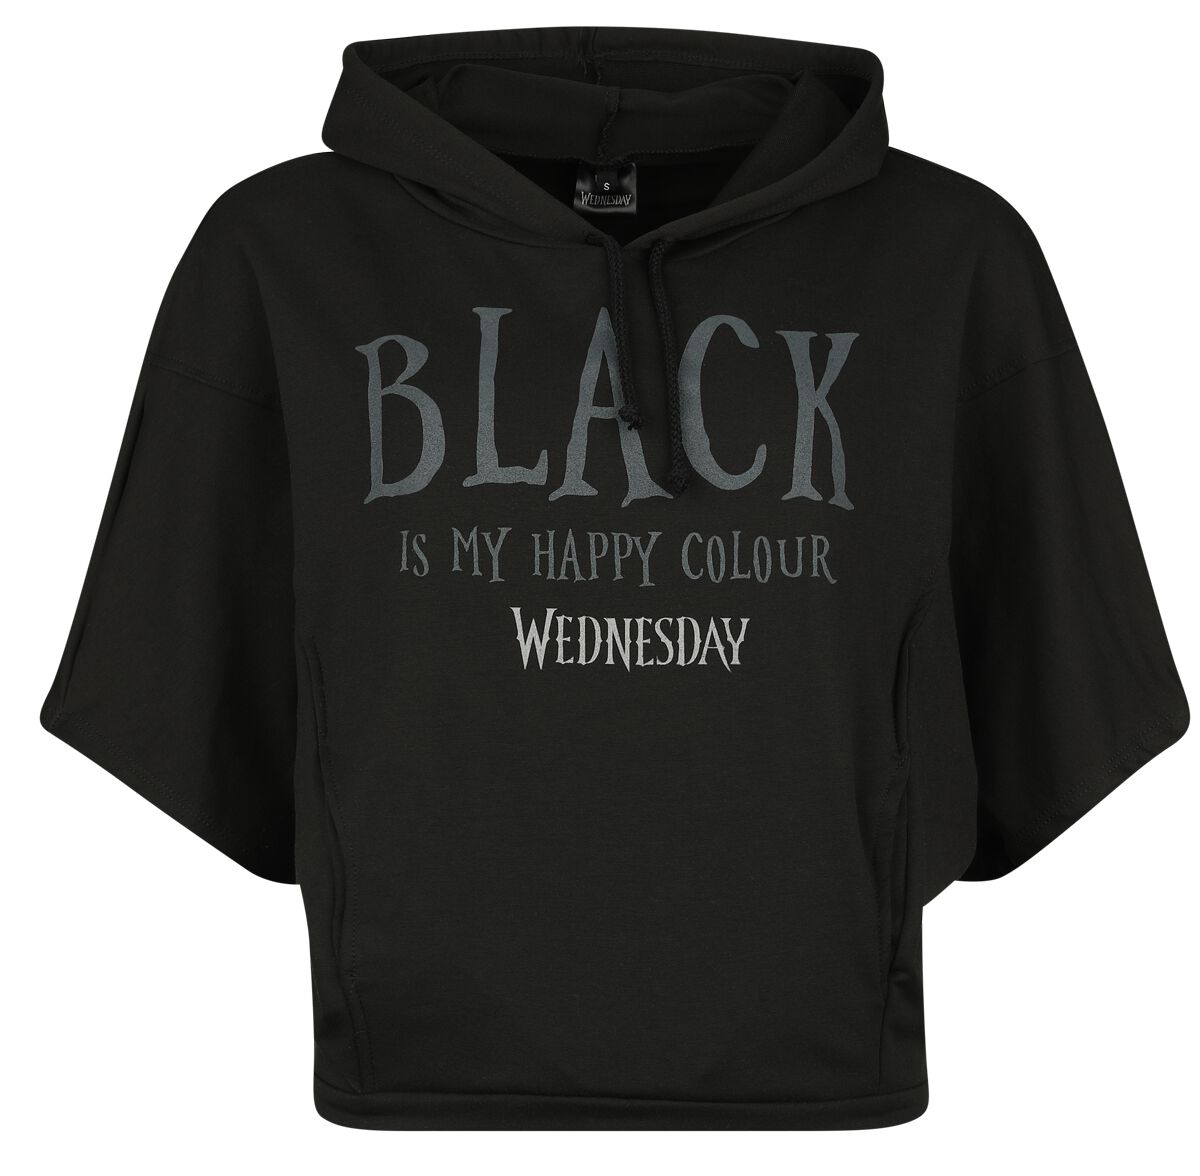 Wednesday - Gothic Kapuzenpullover - Black Is My Happy Colour - L bis XXL - für Damen - Größe L - schwarz  - Lizenzierter Fanartikel von Wednesday